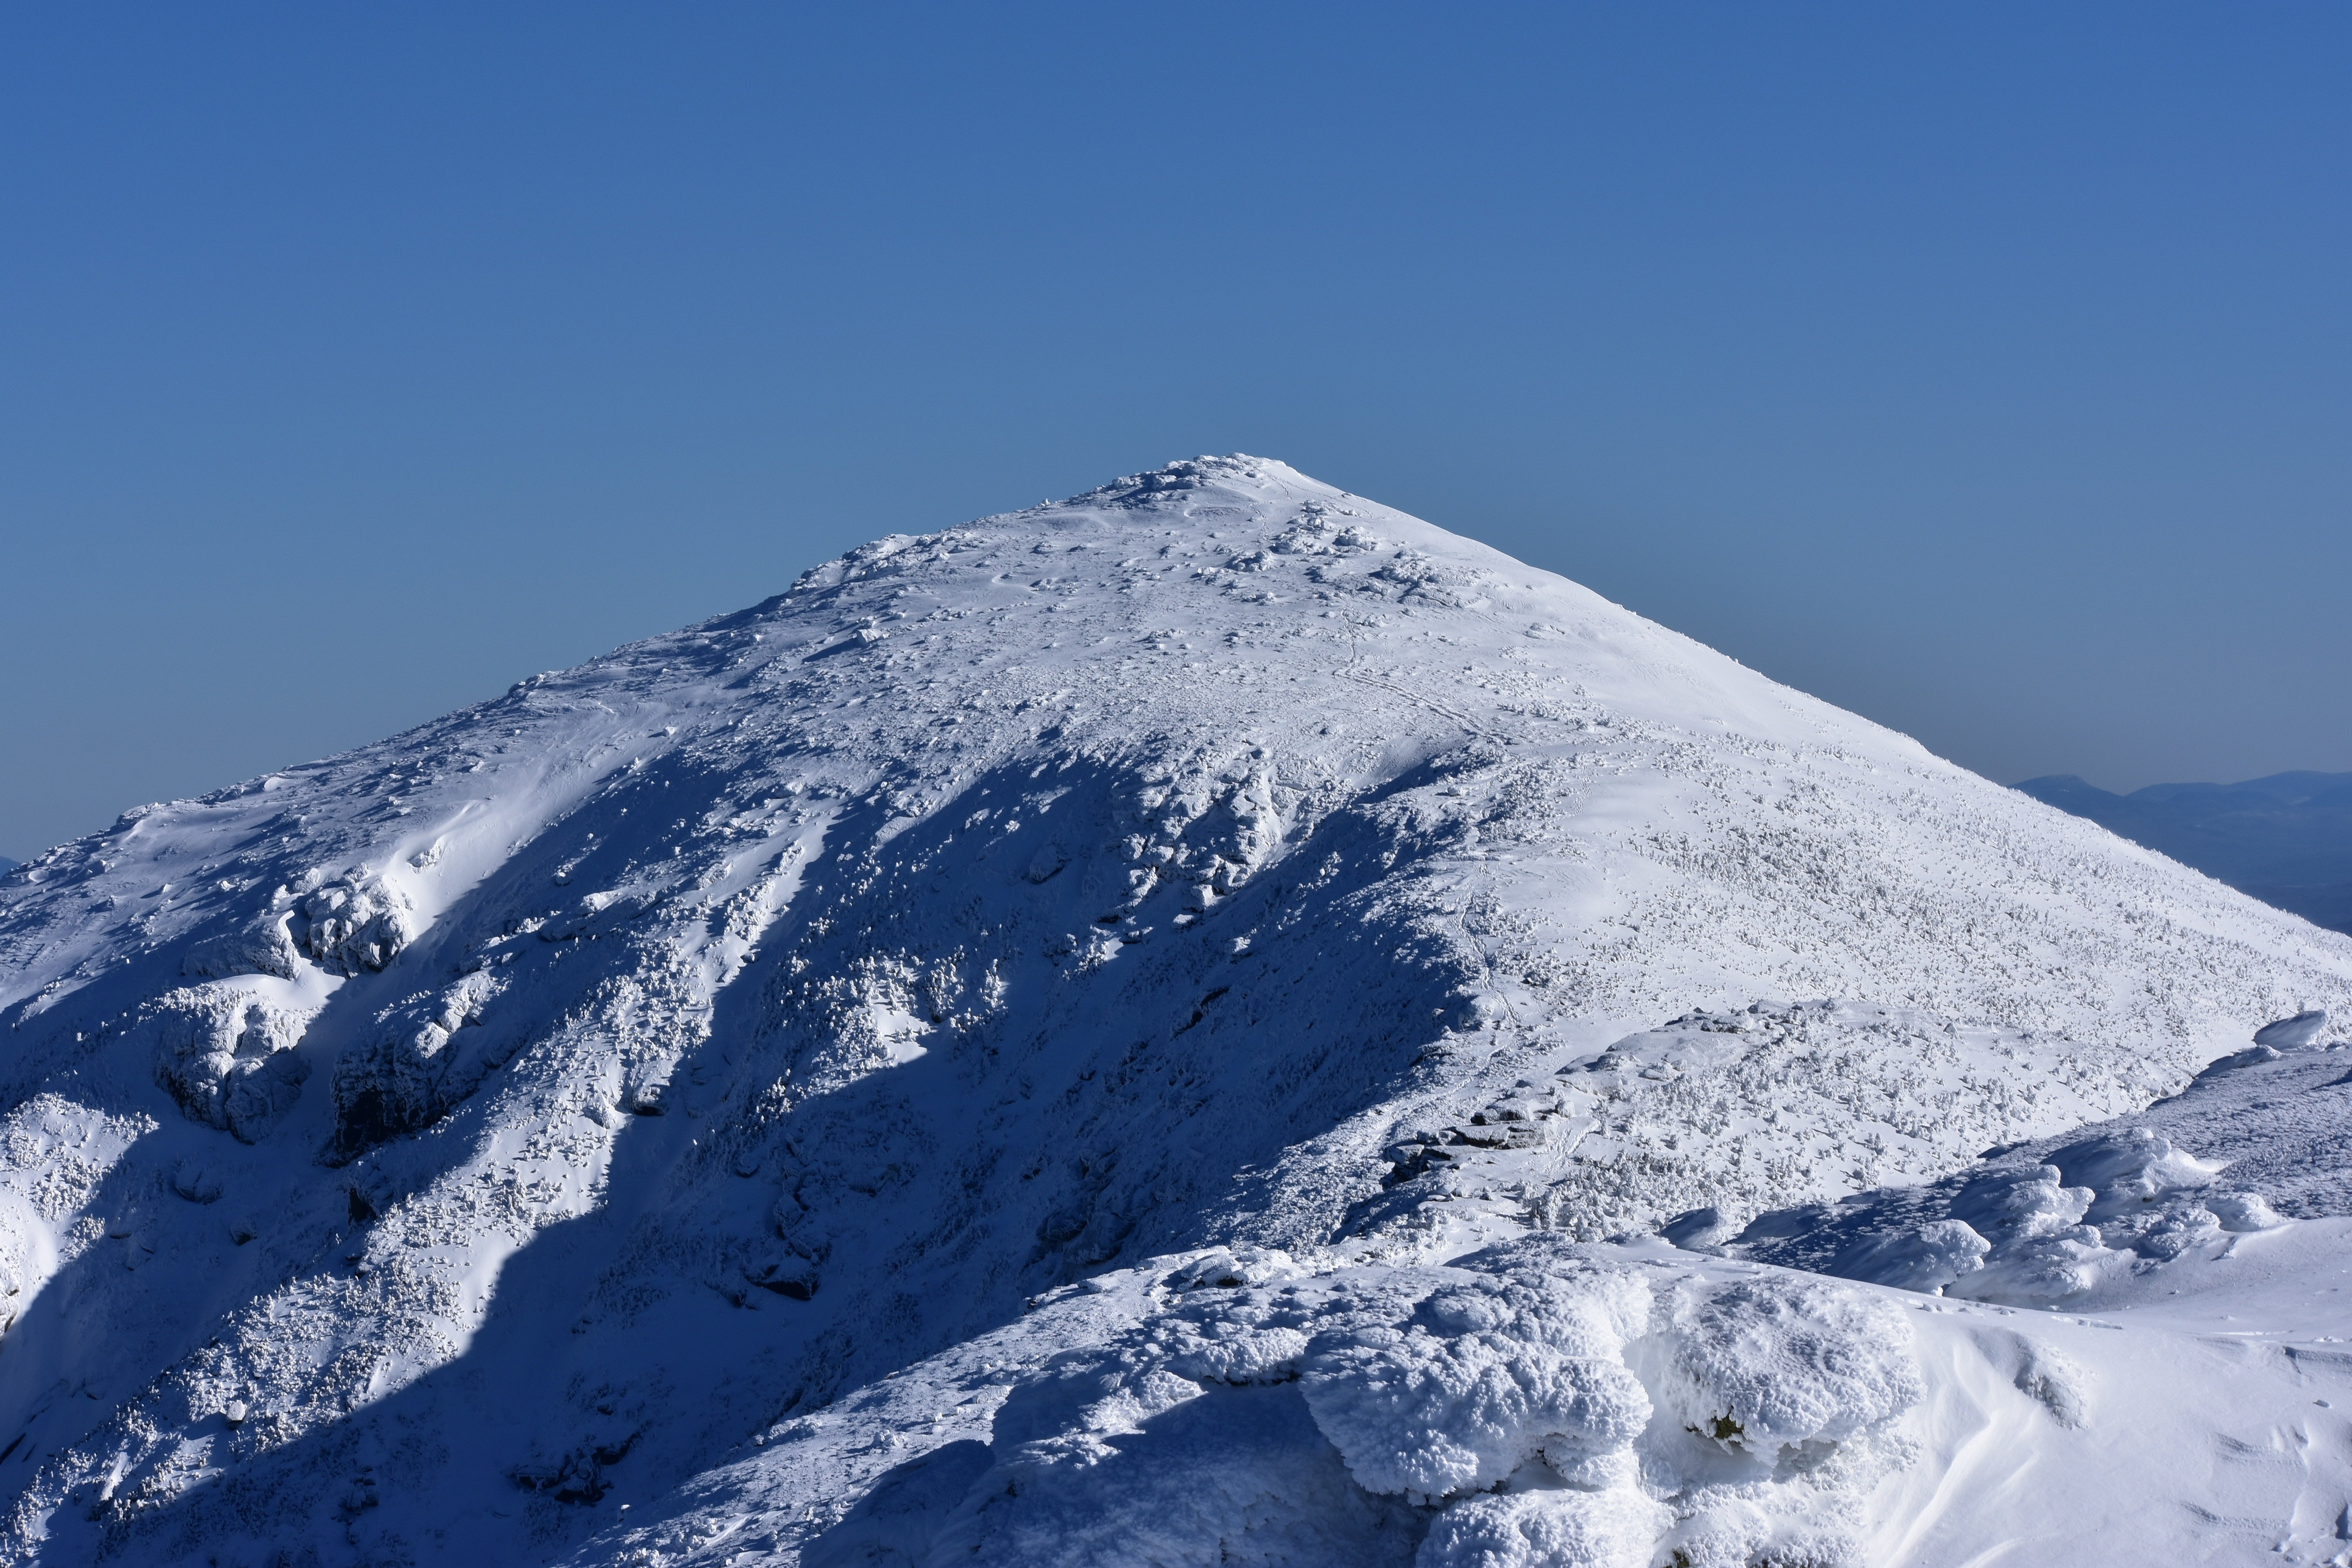 File:Mount Lafayette in Winter.jpg - Wikipedia